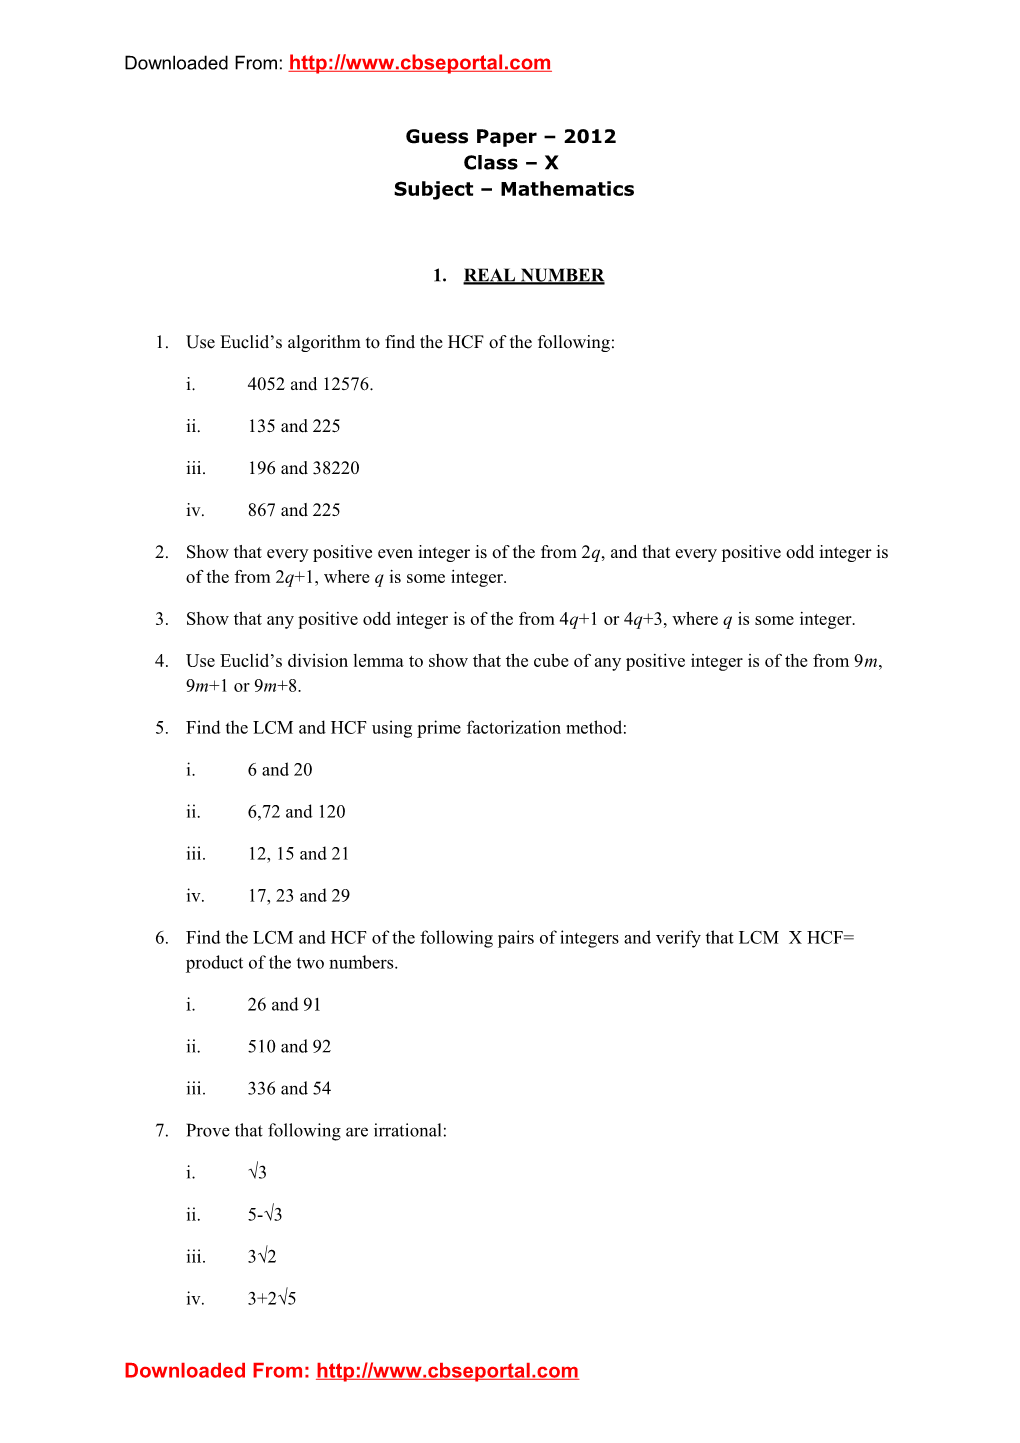 Guess Paper 2012 Class X Subject Mathematics